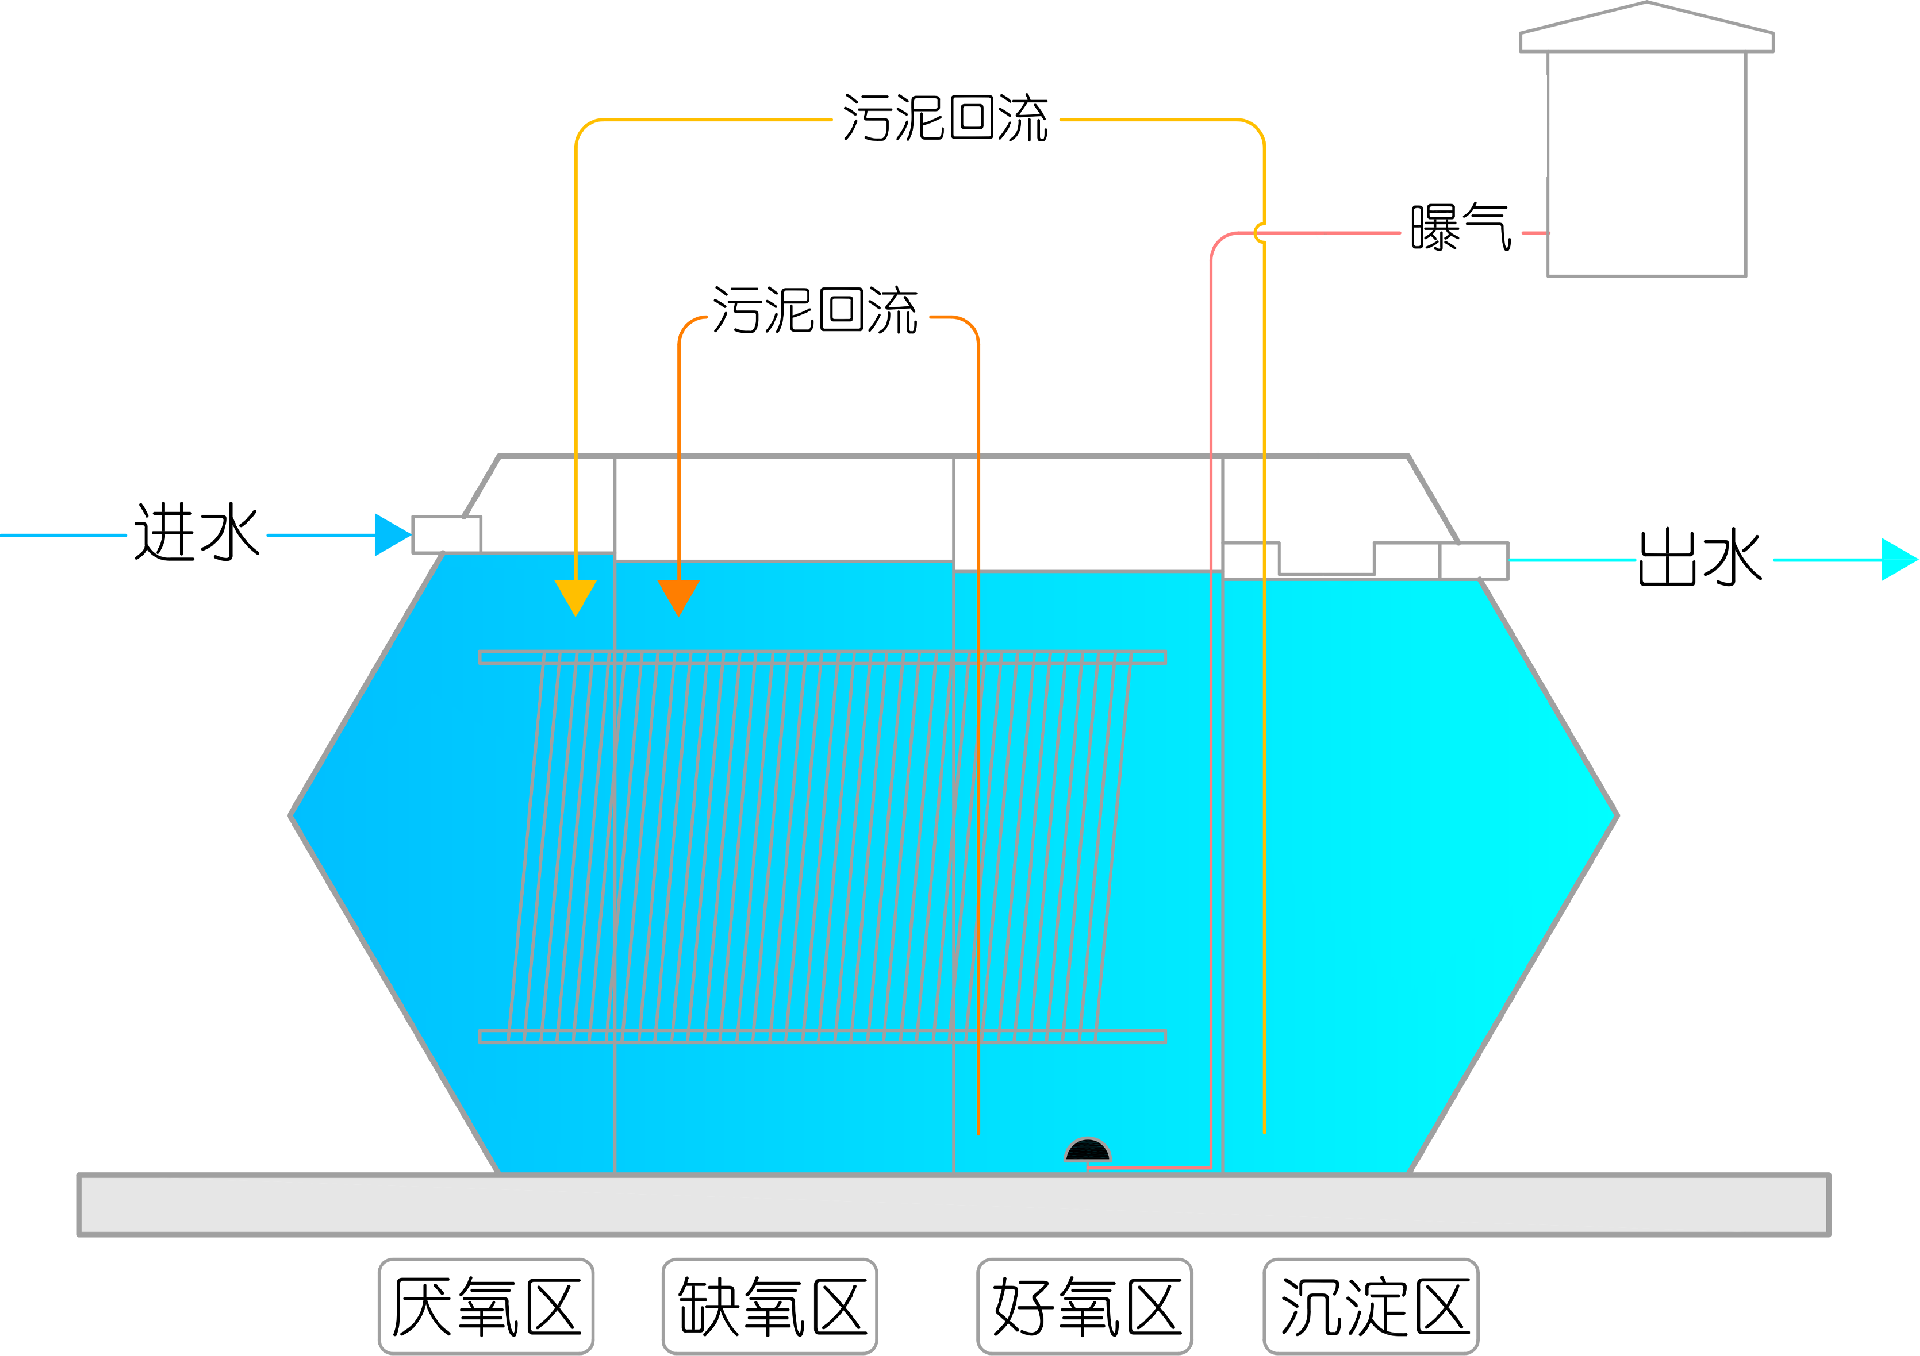 太阳能户用净化槽工艺流程图 Model (1).png